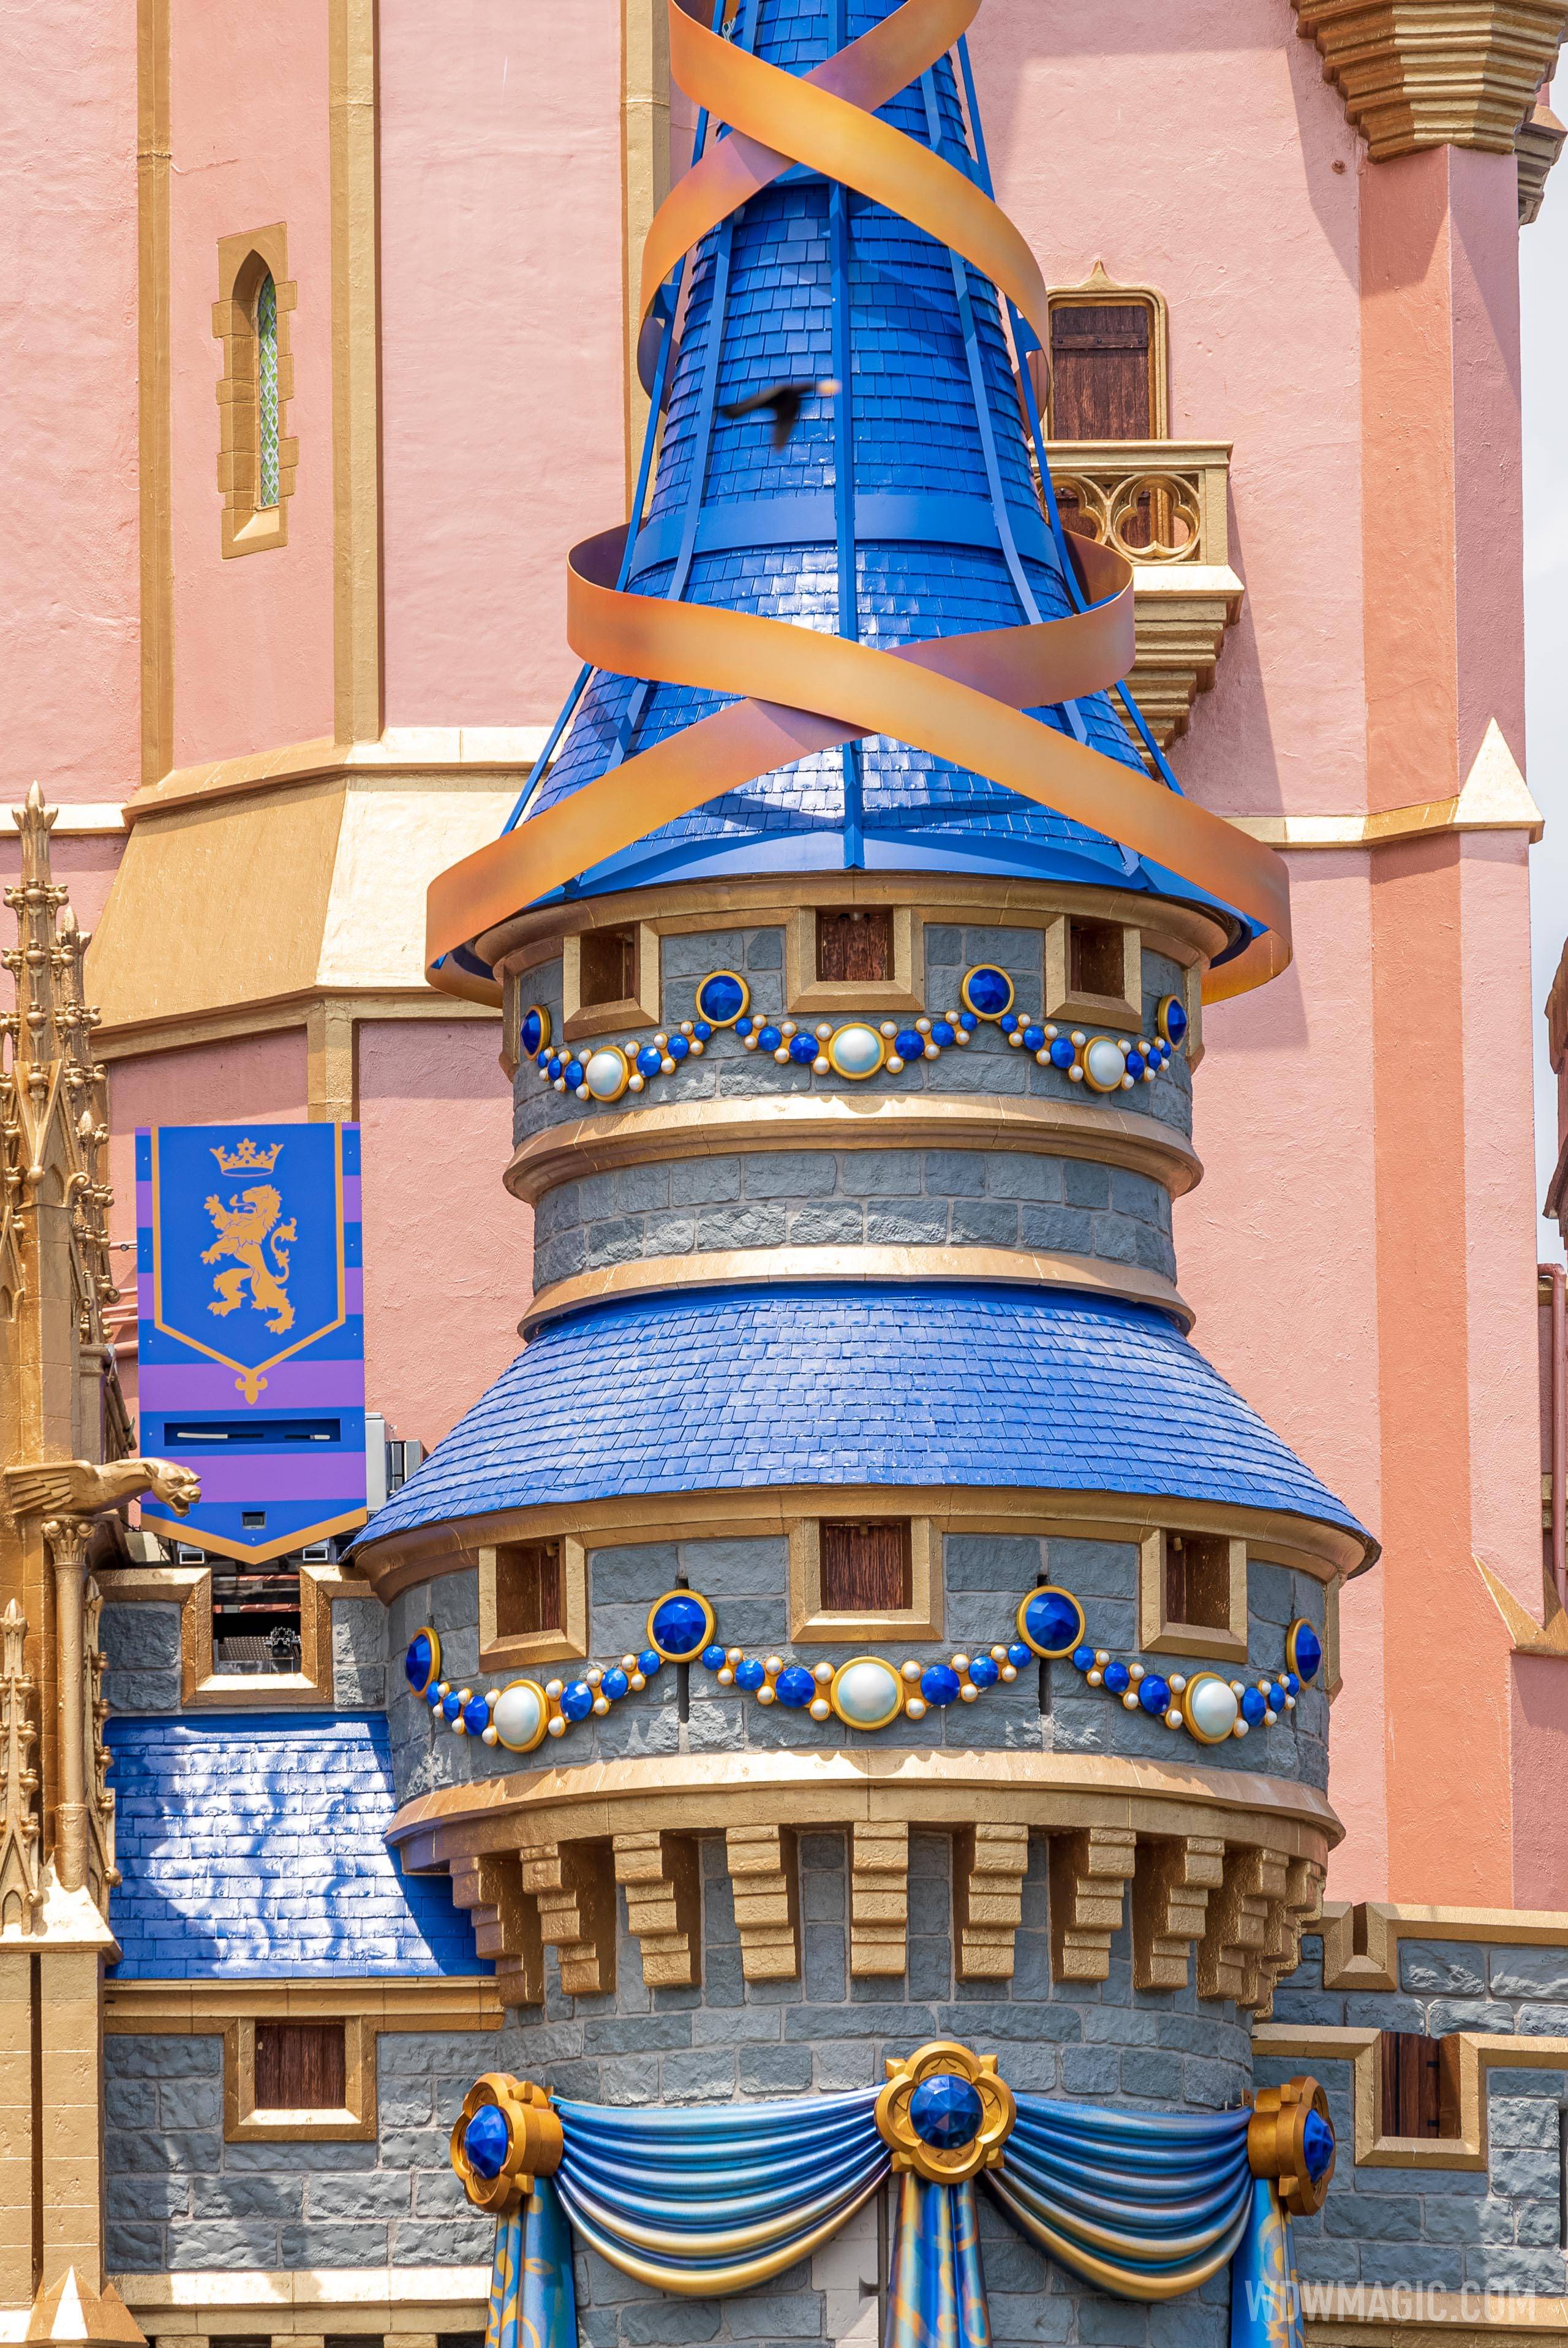 50th anniversary Cinderella Castle additions - April 15 2021